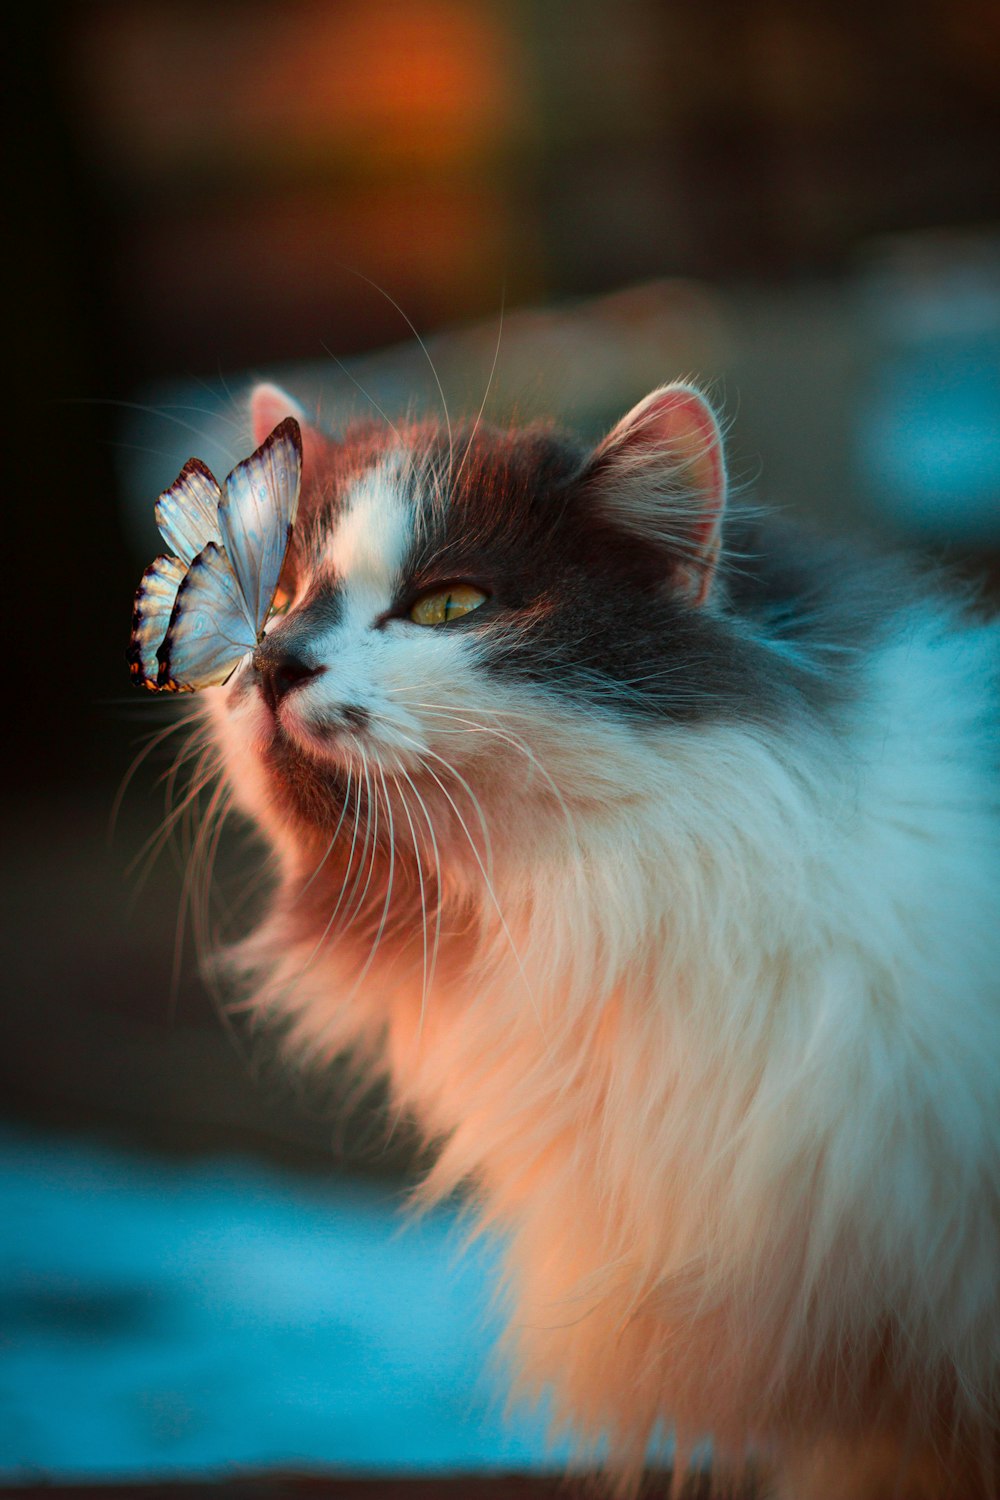 farfalla bianca appoggiata sul naso del gatto